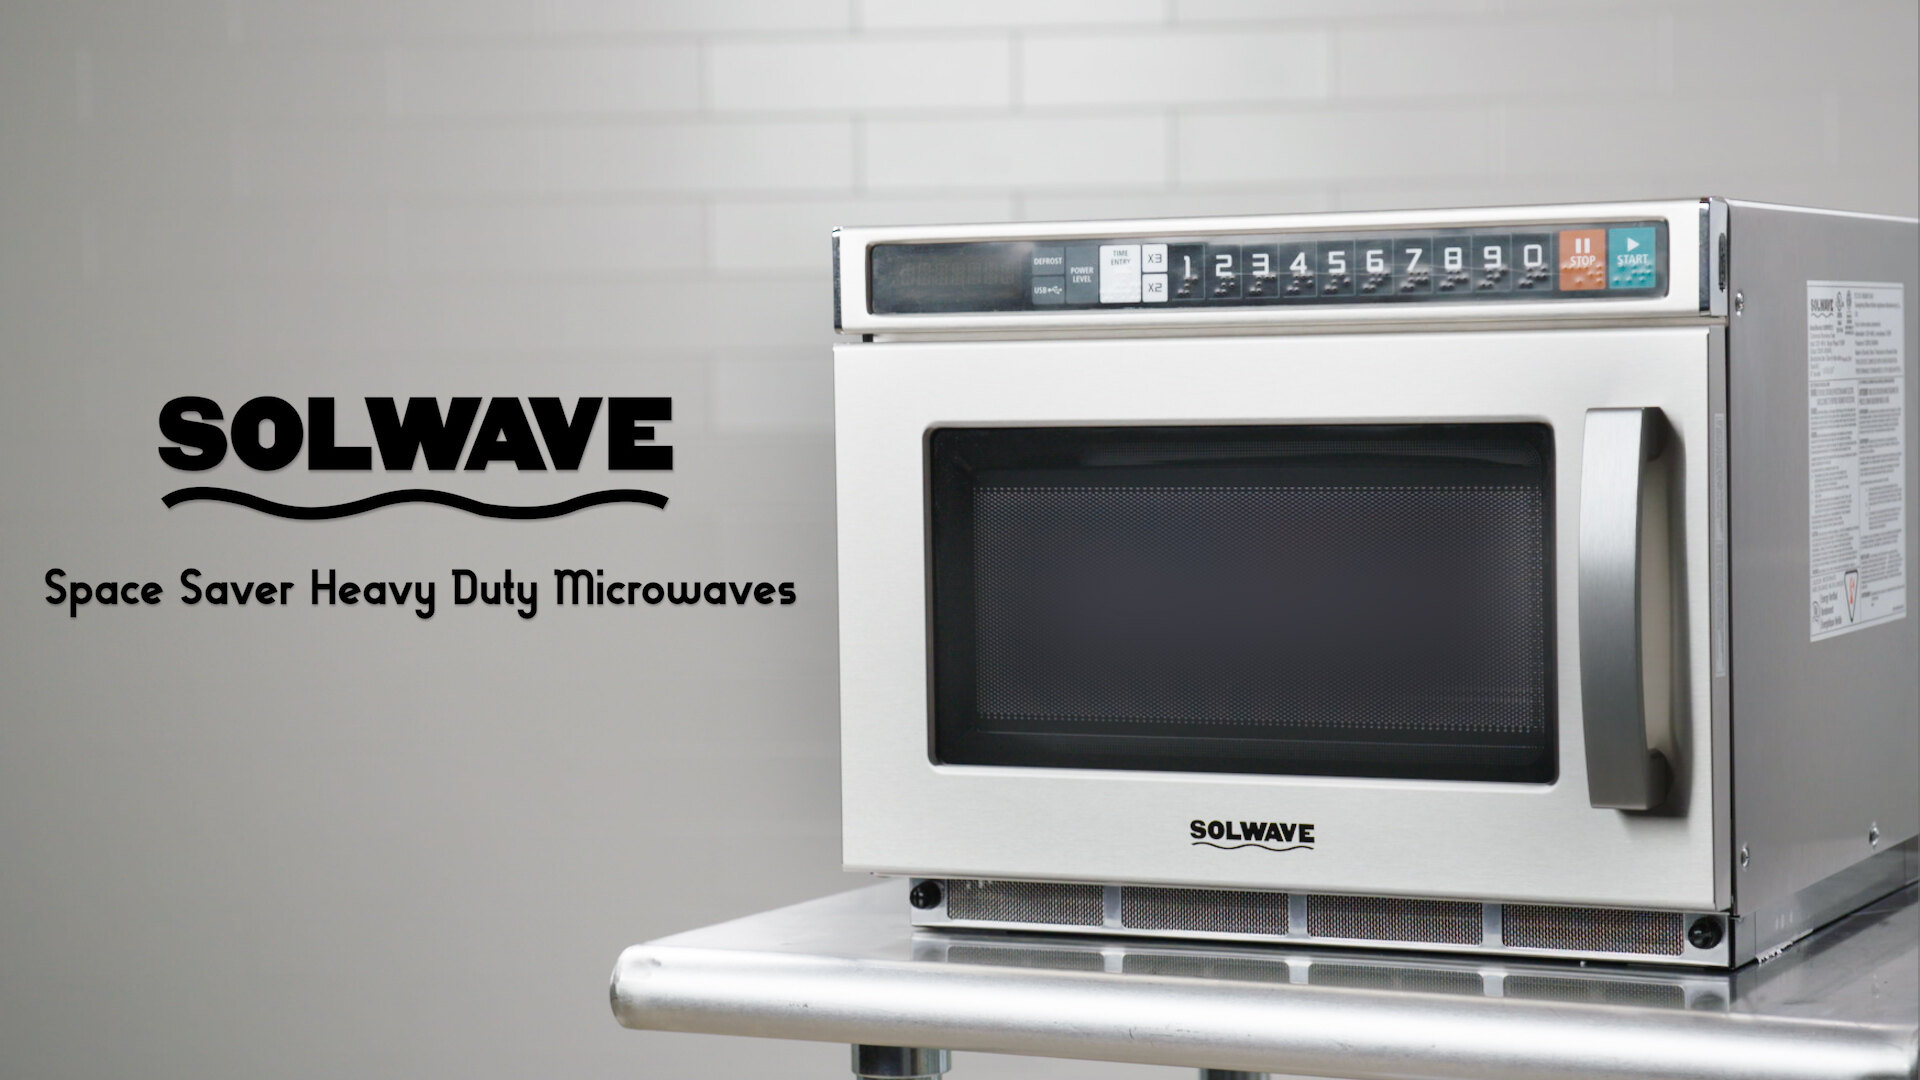 Solwave Space Saver Heavy Duty Microwaves Video